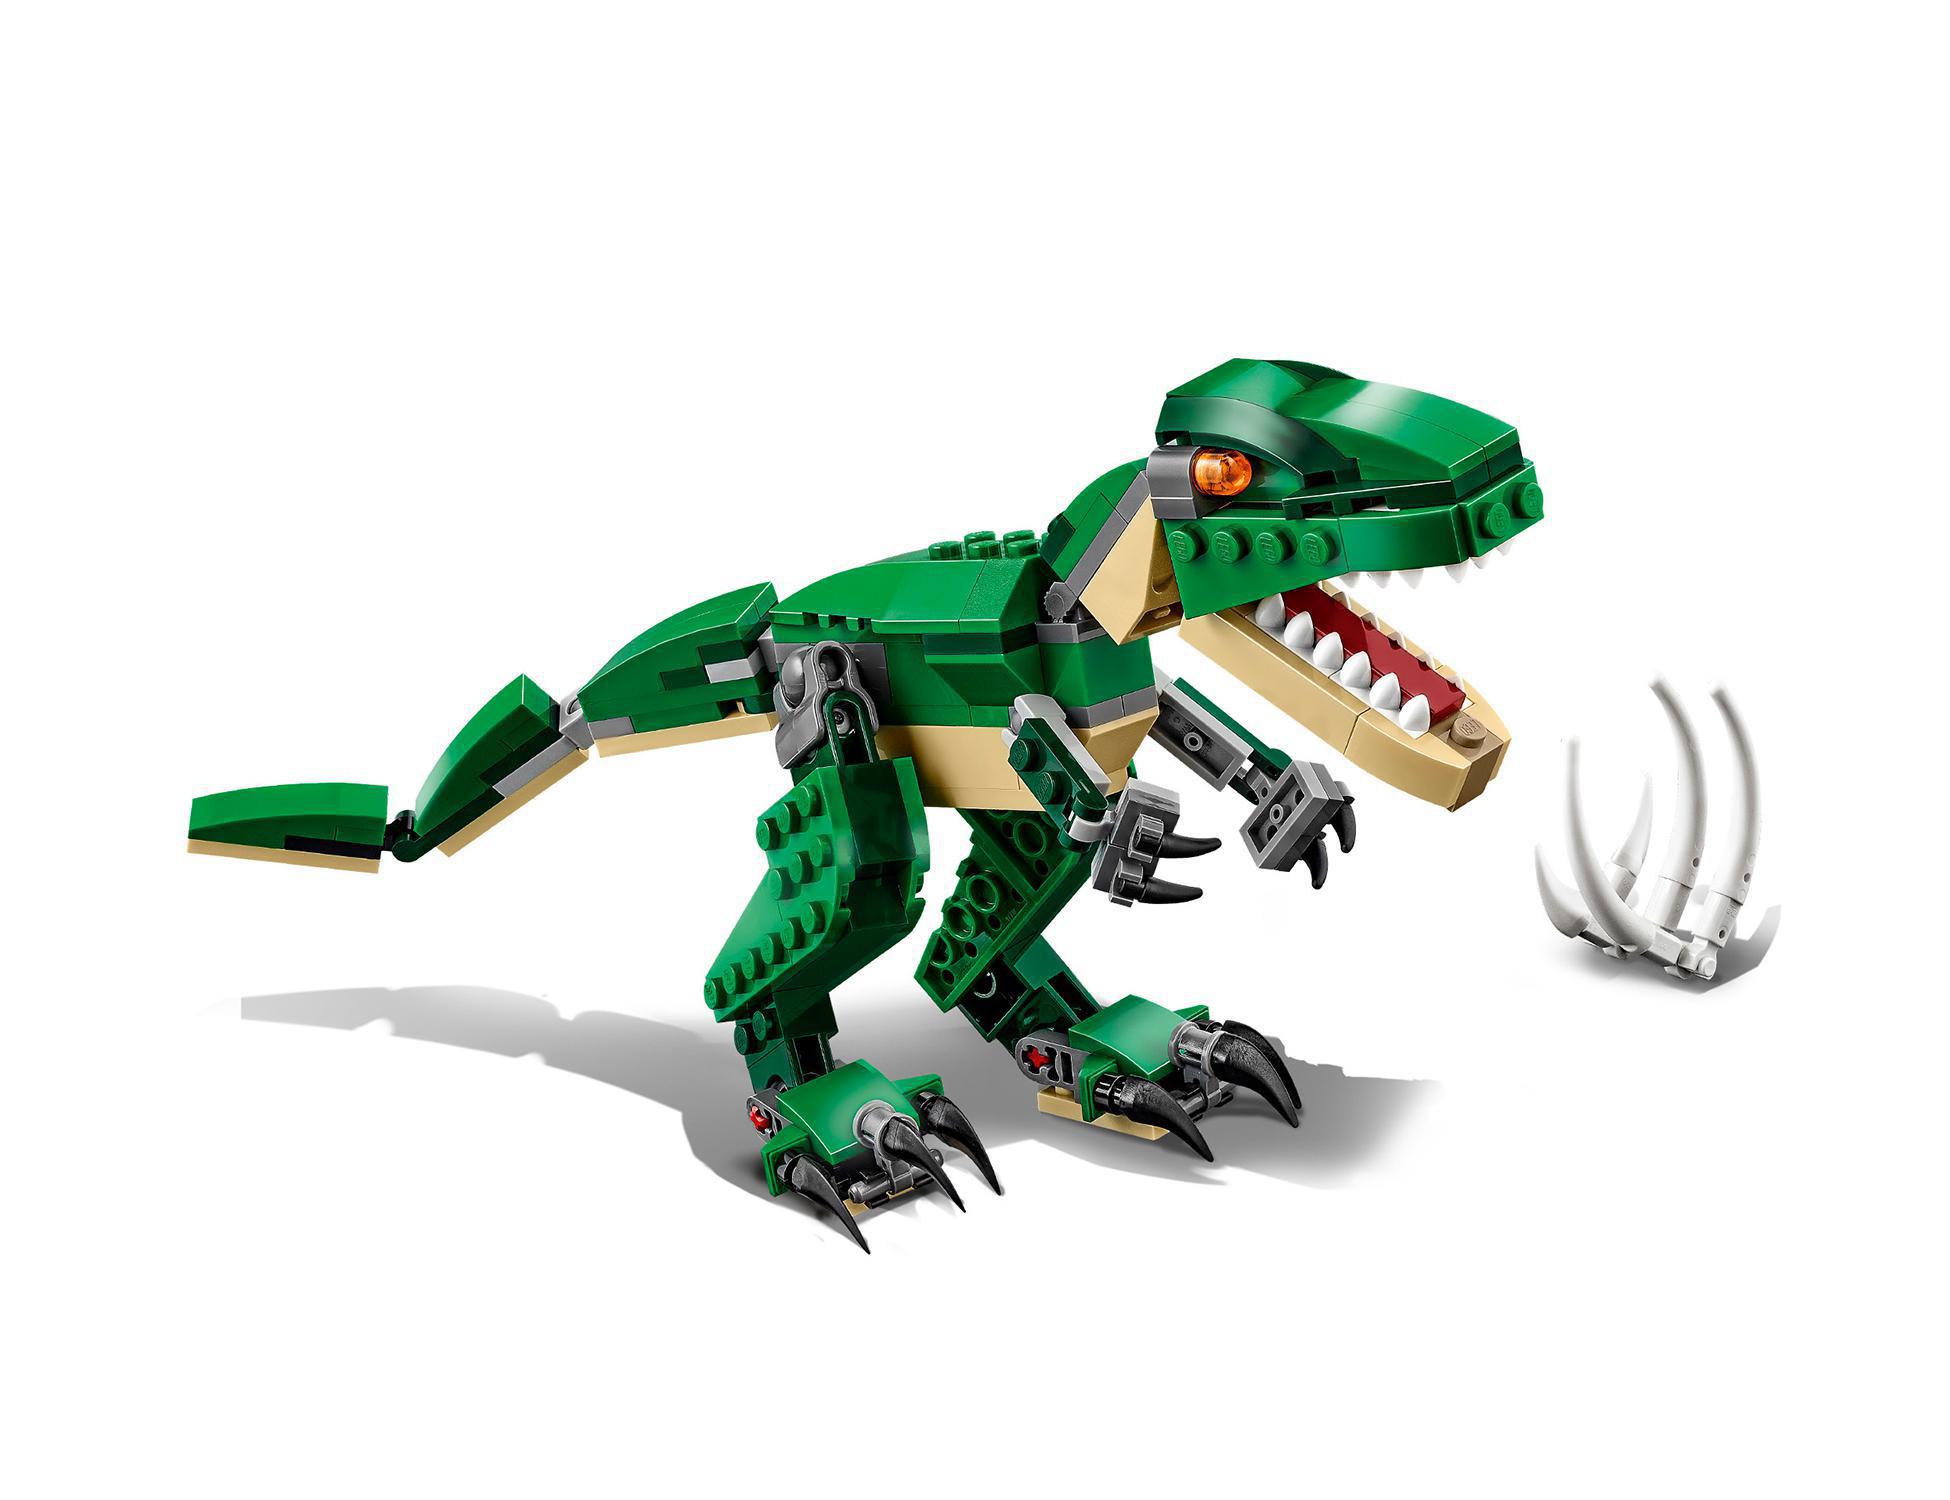 Lego creator 31058 dinosauro, giocattolo 3 in 1, giochi per bambini da costruire con t-rex e pterodattilo, idee regalo - LEGO CREATOR, Lego